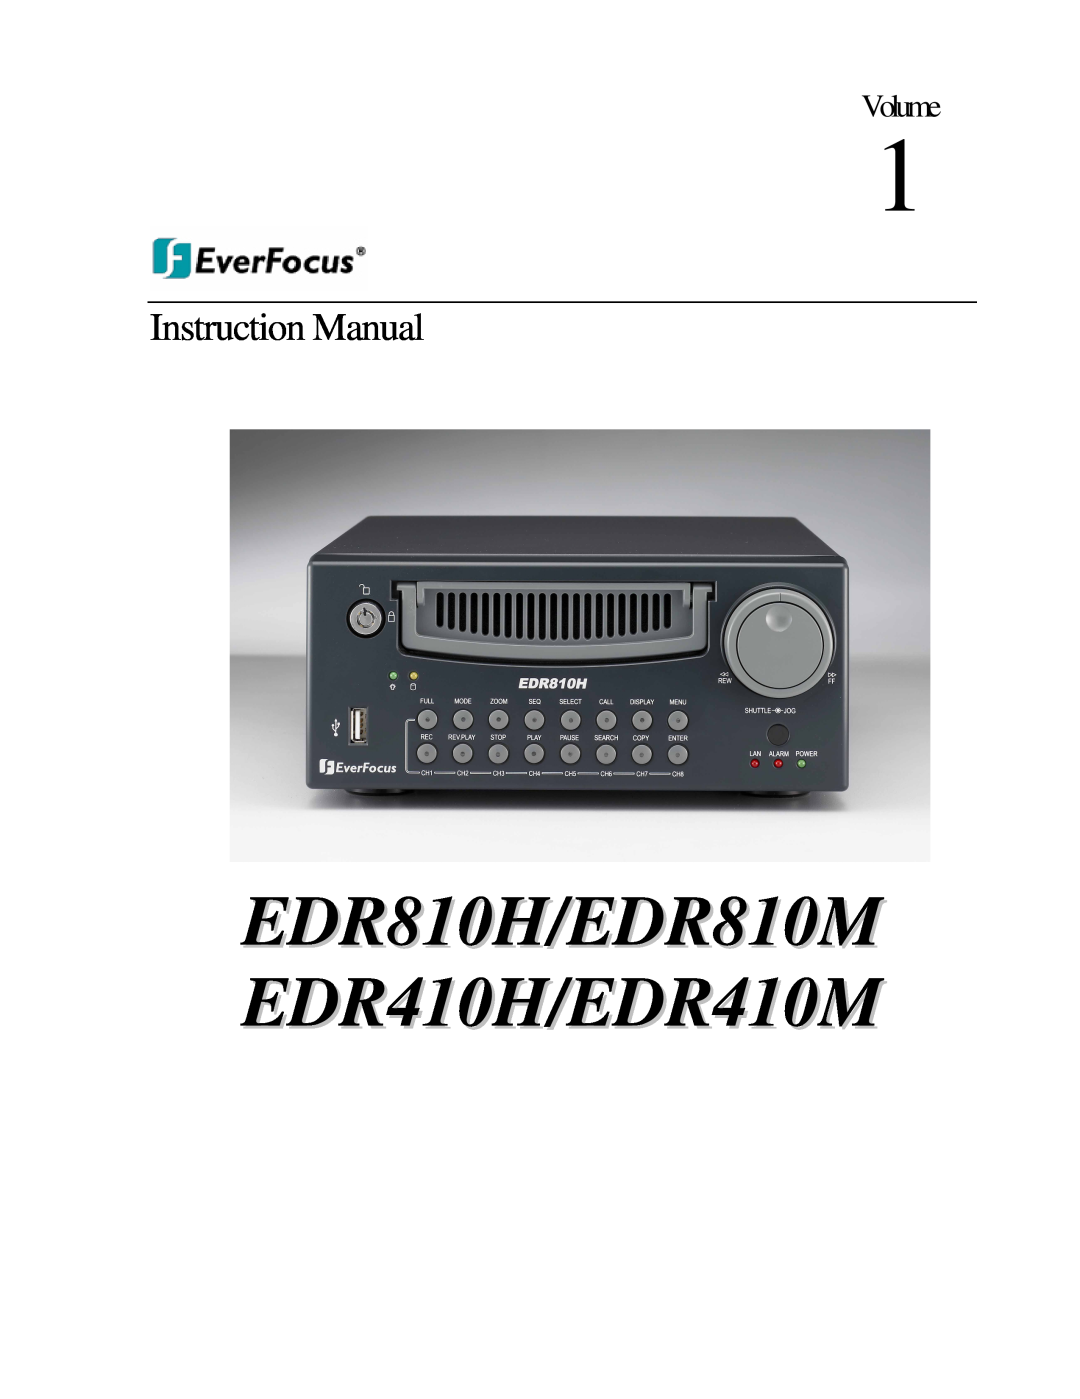 EverFocus instruction manual Volume, EDR810H/EDR810M EDR410H/EDR410M, Instruction Manual 